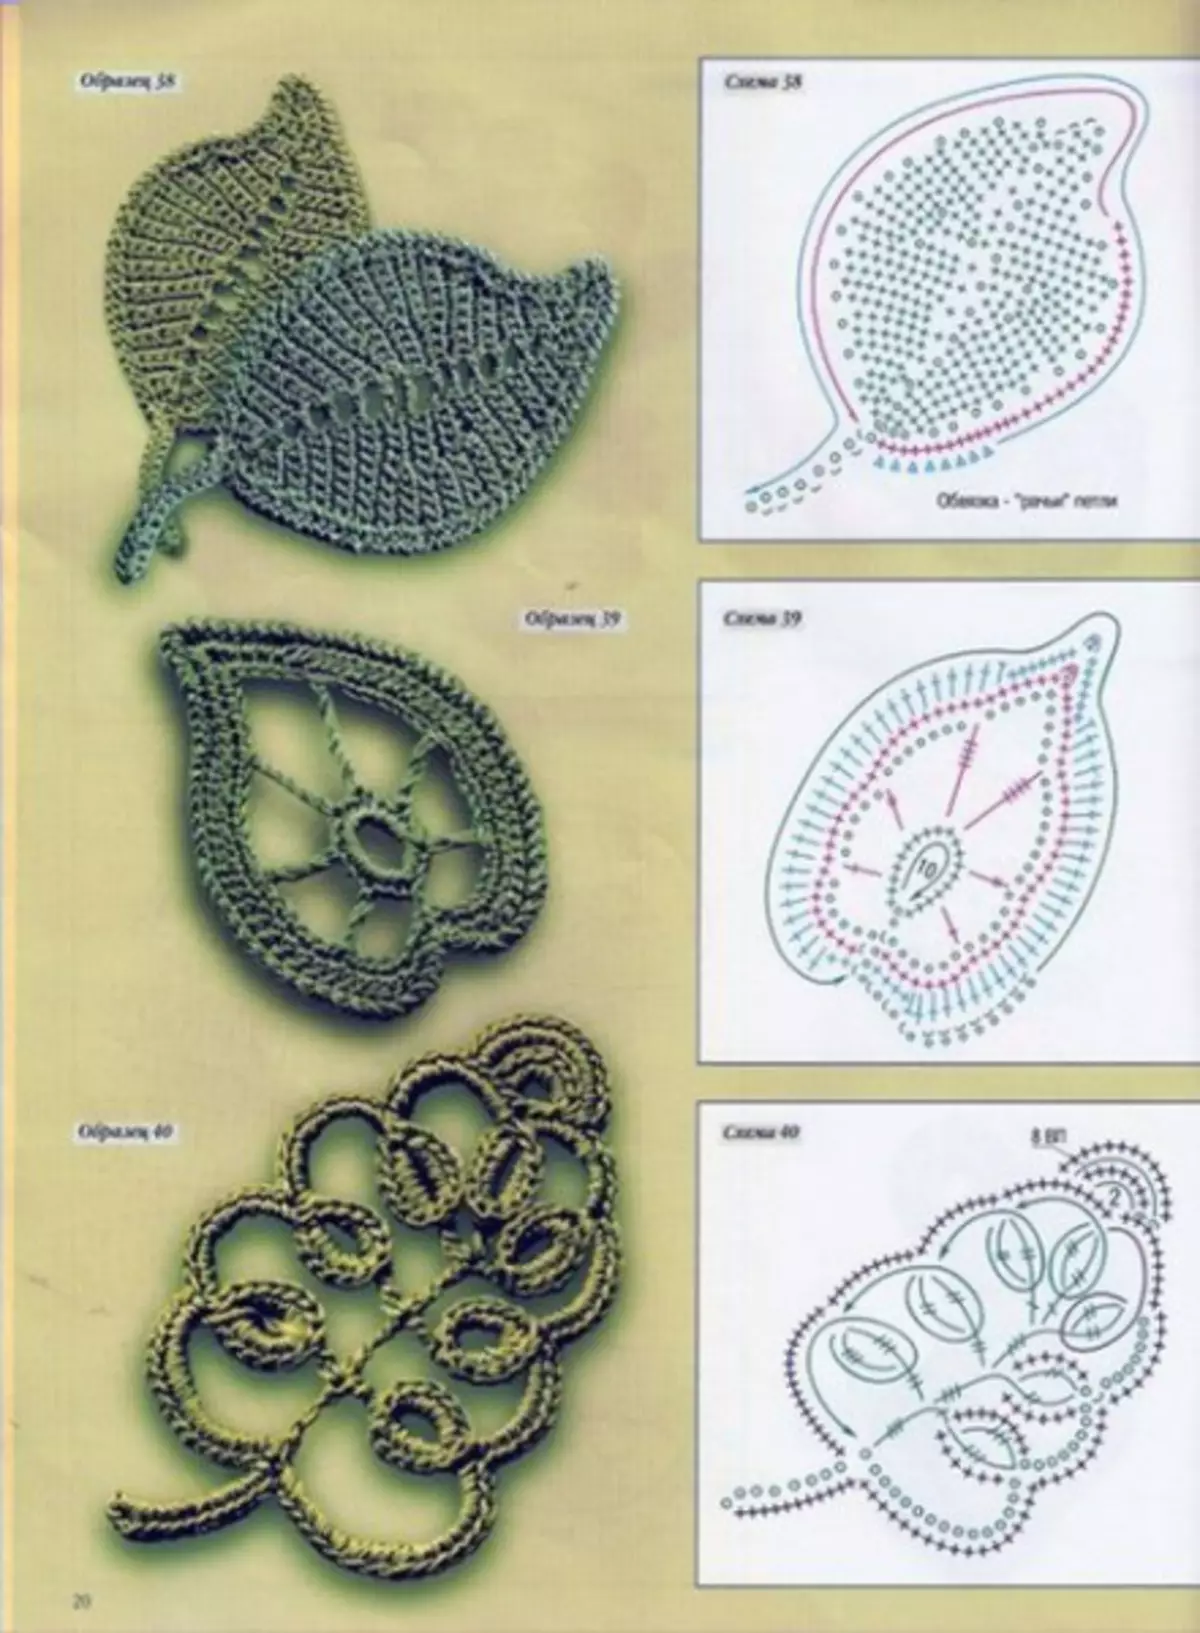 એક યોજના સાથે Crochet પર્ણ: વર્ણન અને વિડિઓ સાથે માસ્ટર વર્ગ